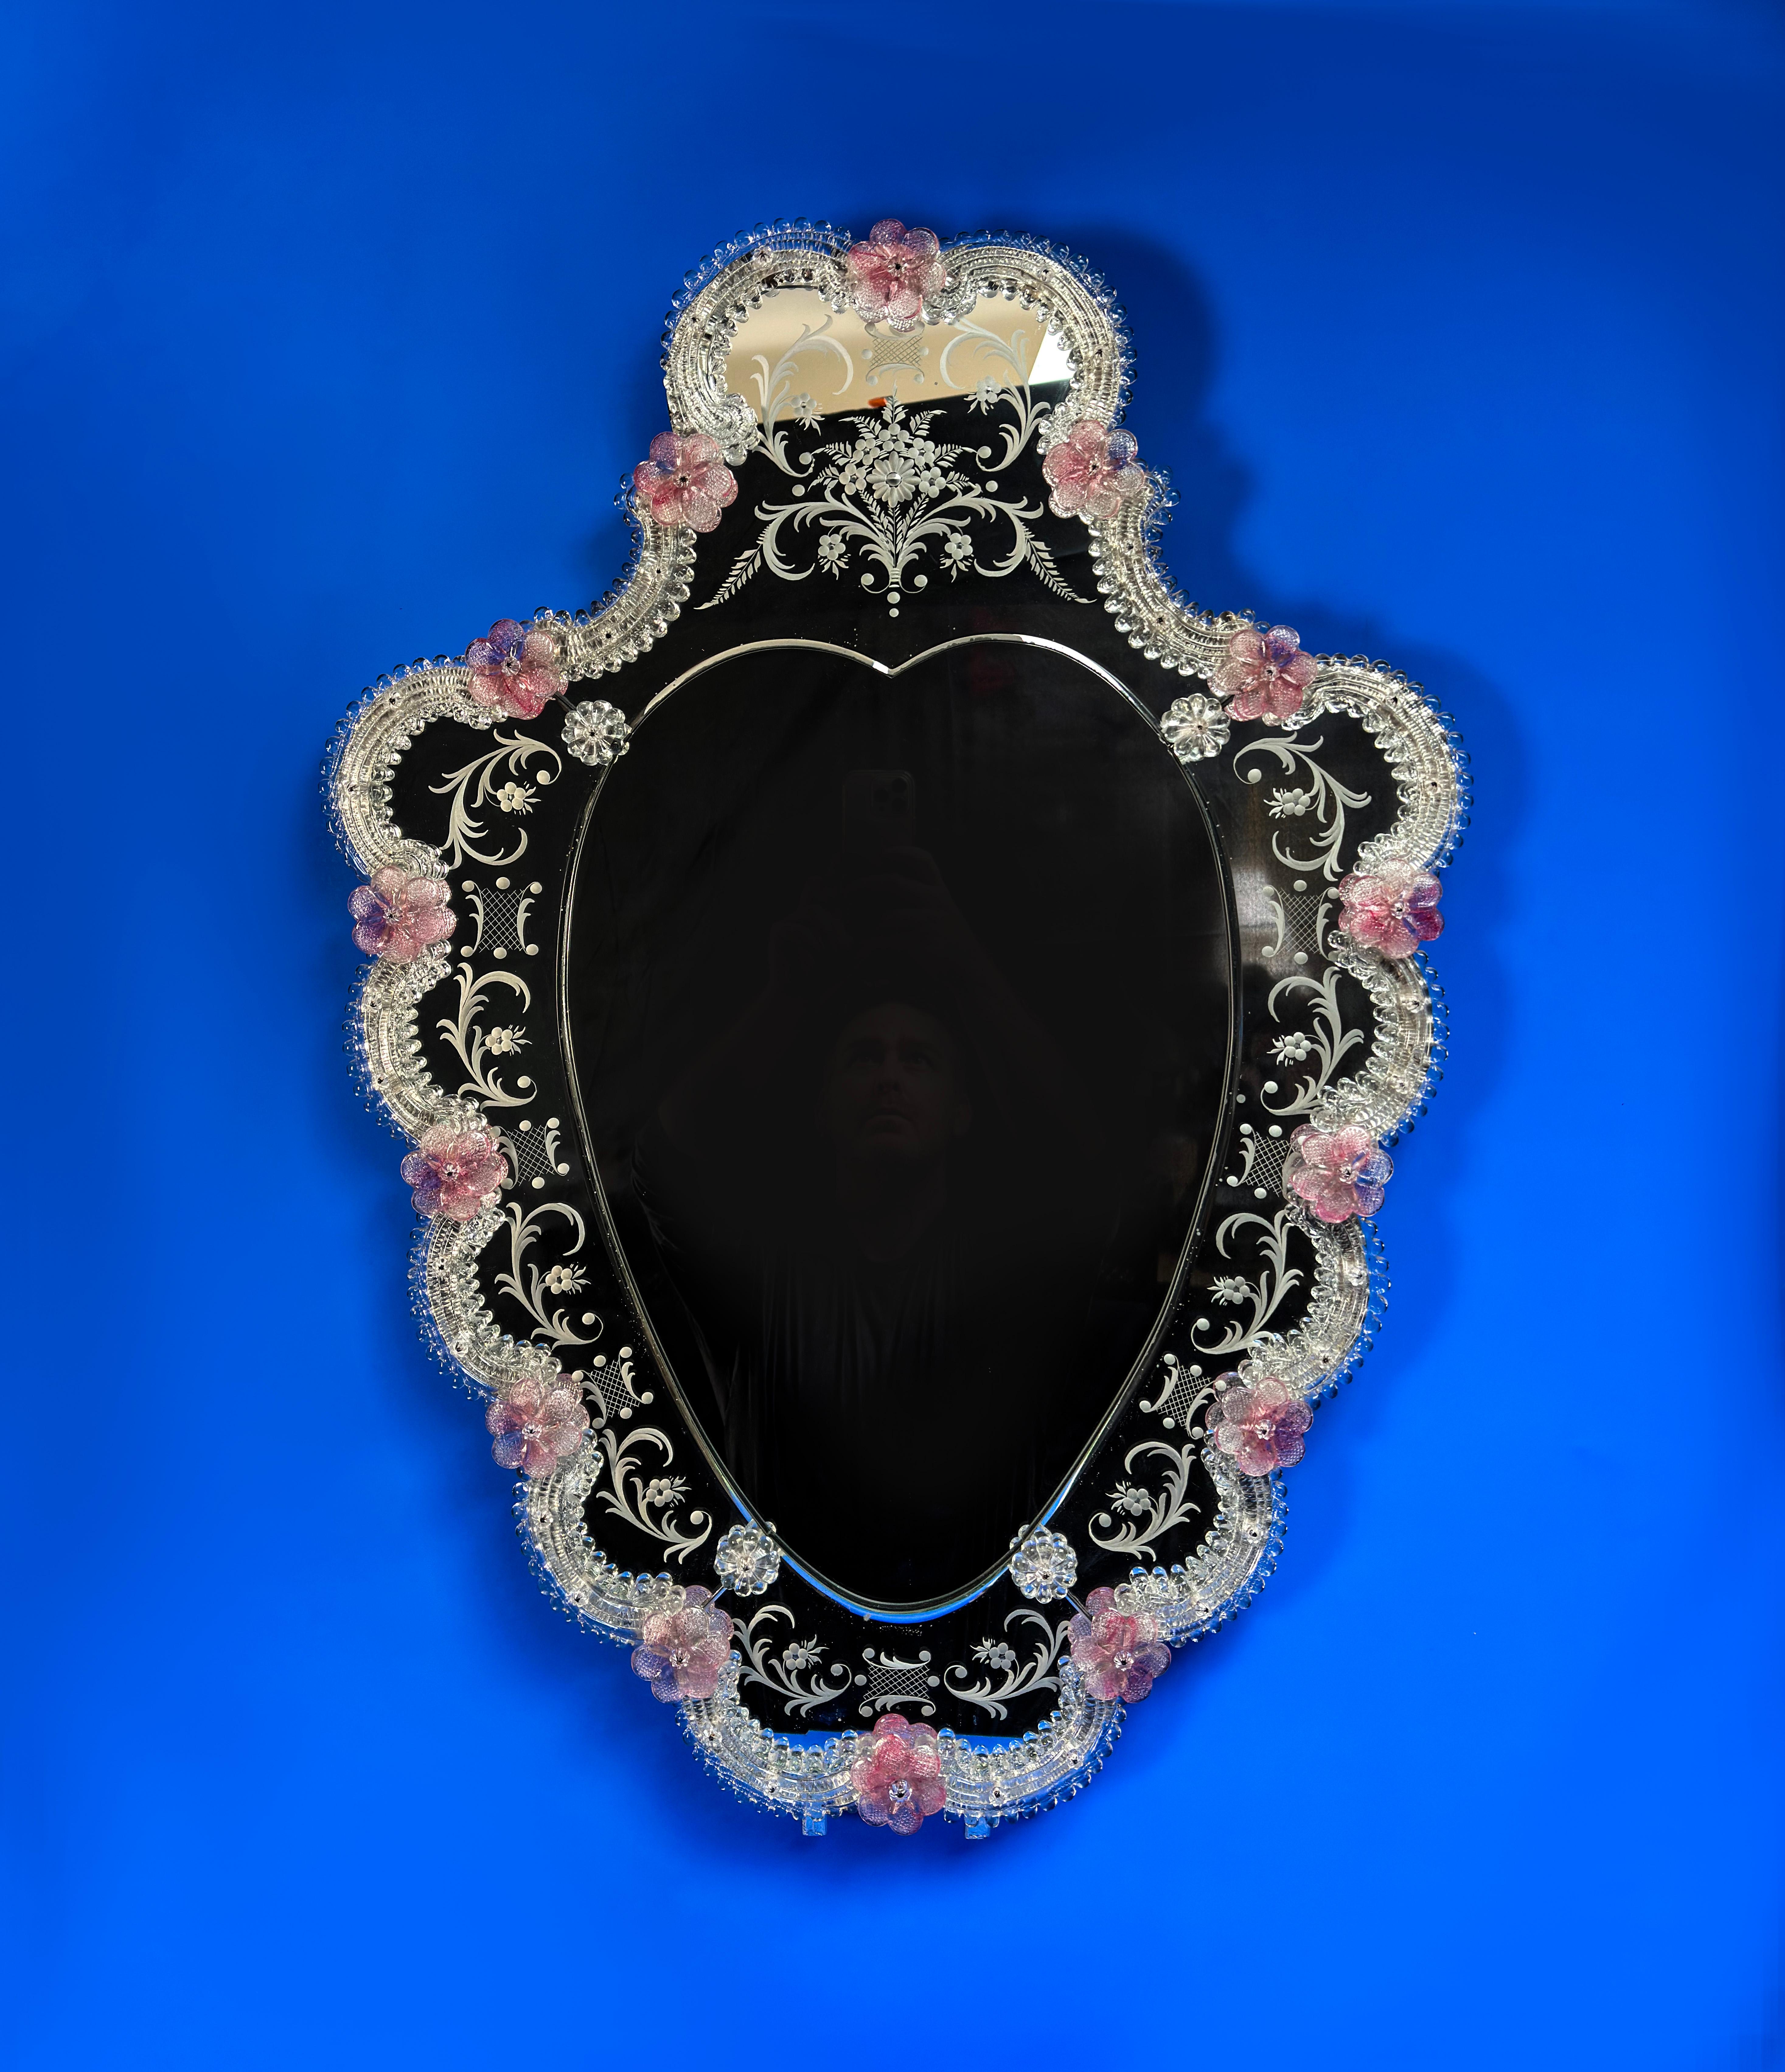 Magnifique miroir vénitien en forme de bouclier, fabriqué à Venise dans les années 1960.

Il présente une multitude de décorations et d'embellissements délicats. Le panneau extérieur en miroir est finement gravé d'un ensemble de volutes de style